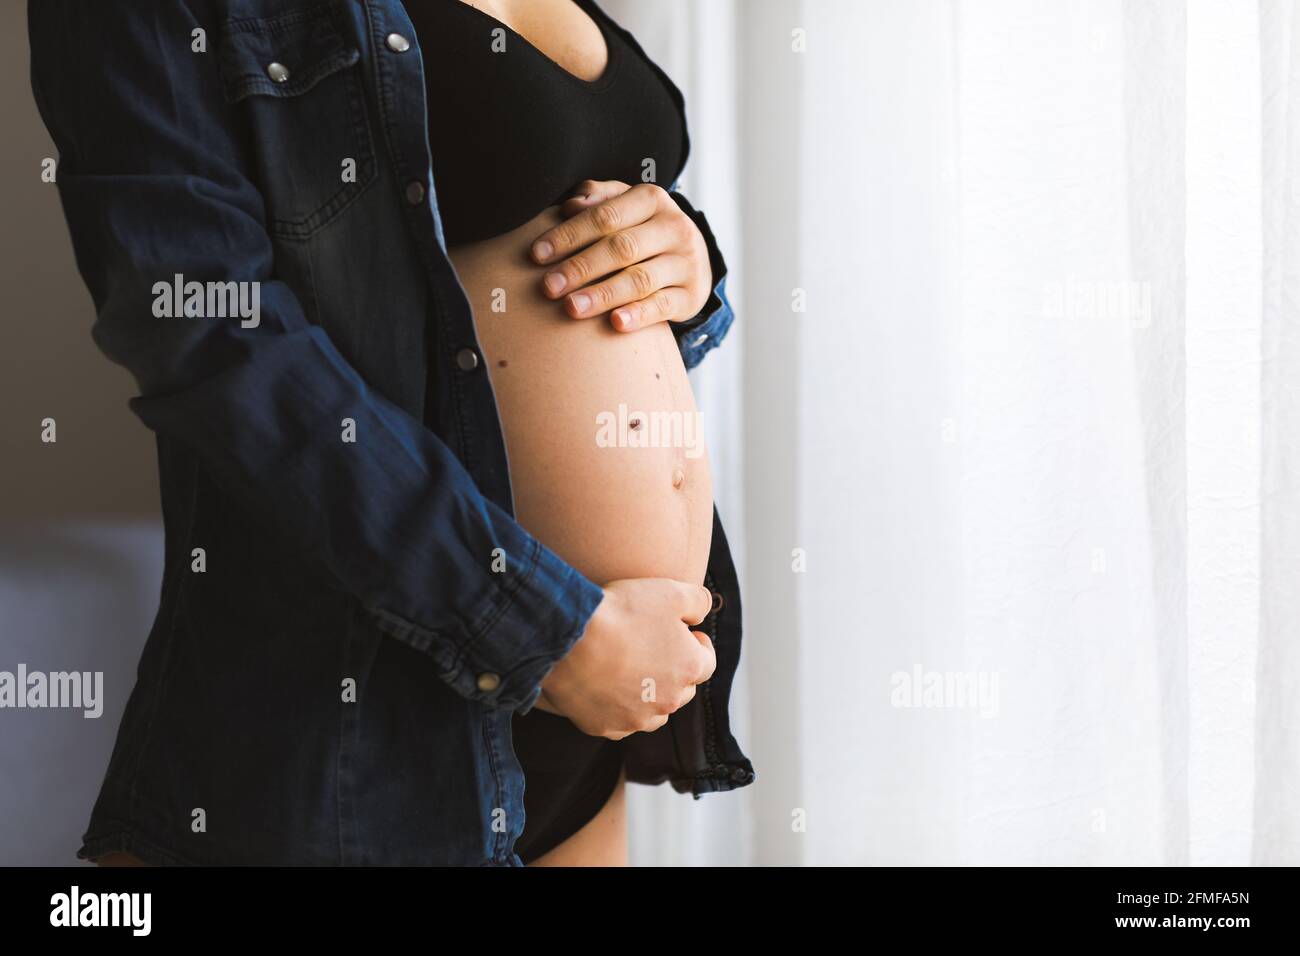 Femme enceinte touchant son ventre près des fenêtres. Concept de grossesse et de maternité. Banque D'Images